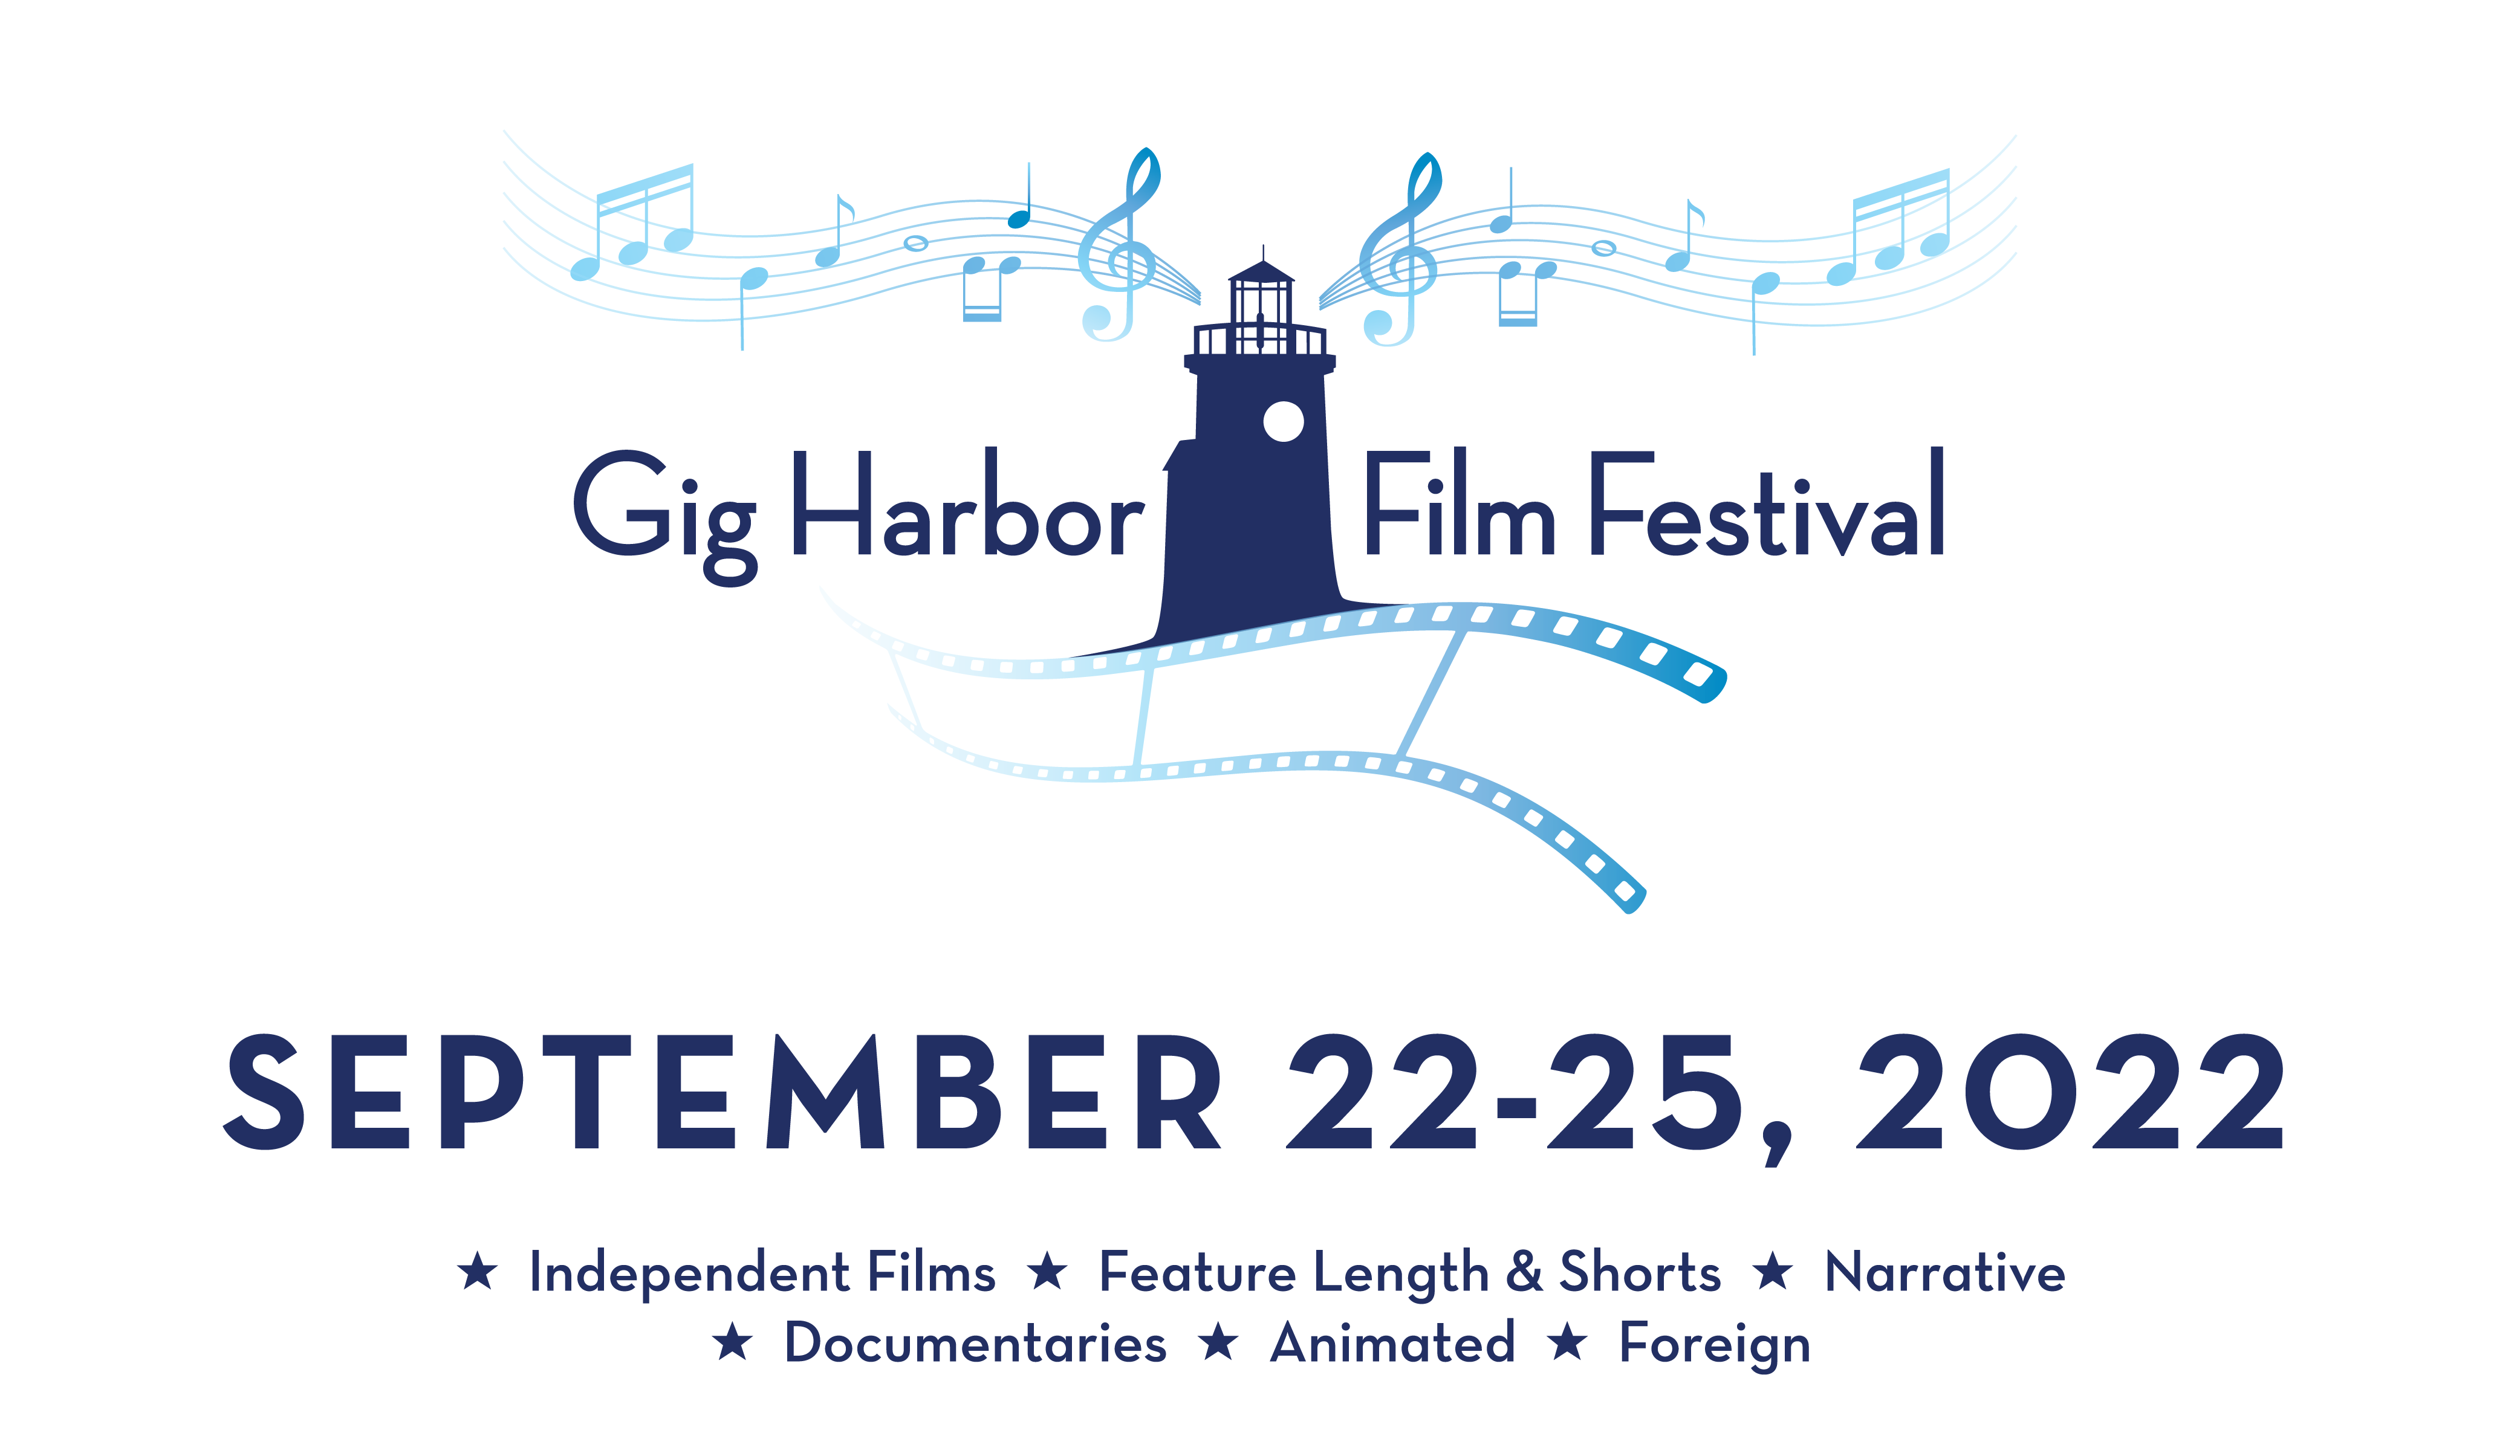 2022 Film Festival Gig Harbor Film Festival